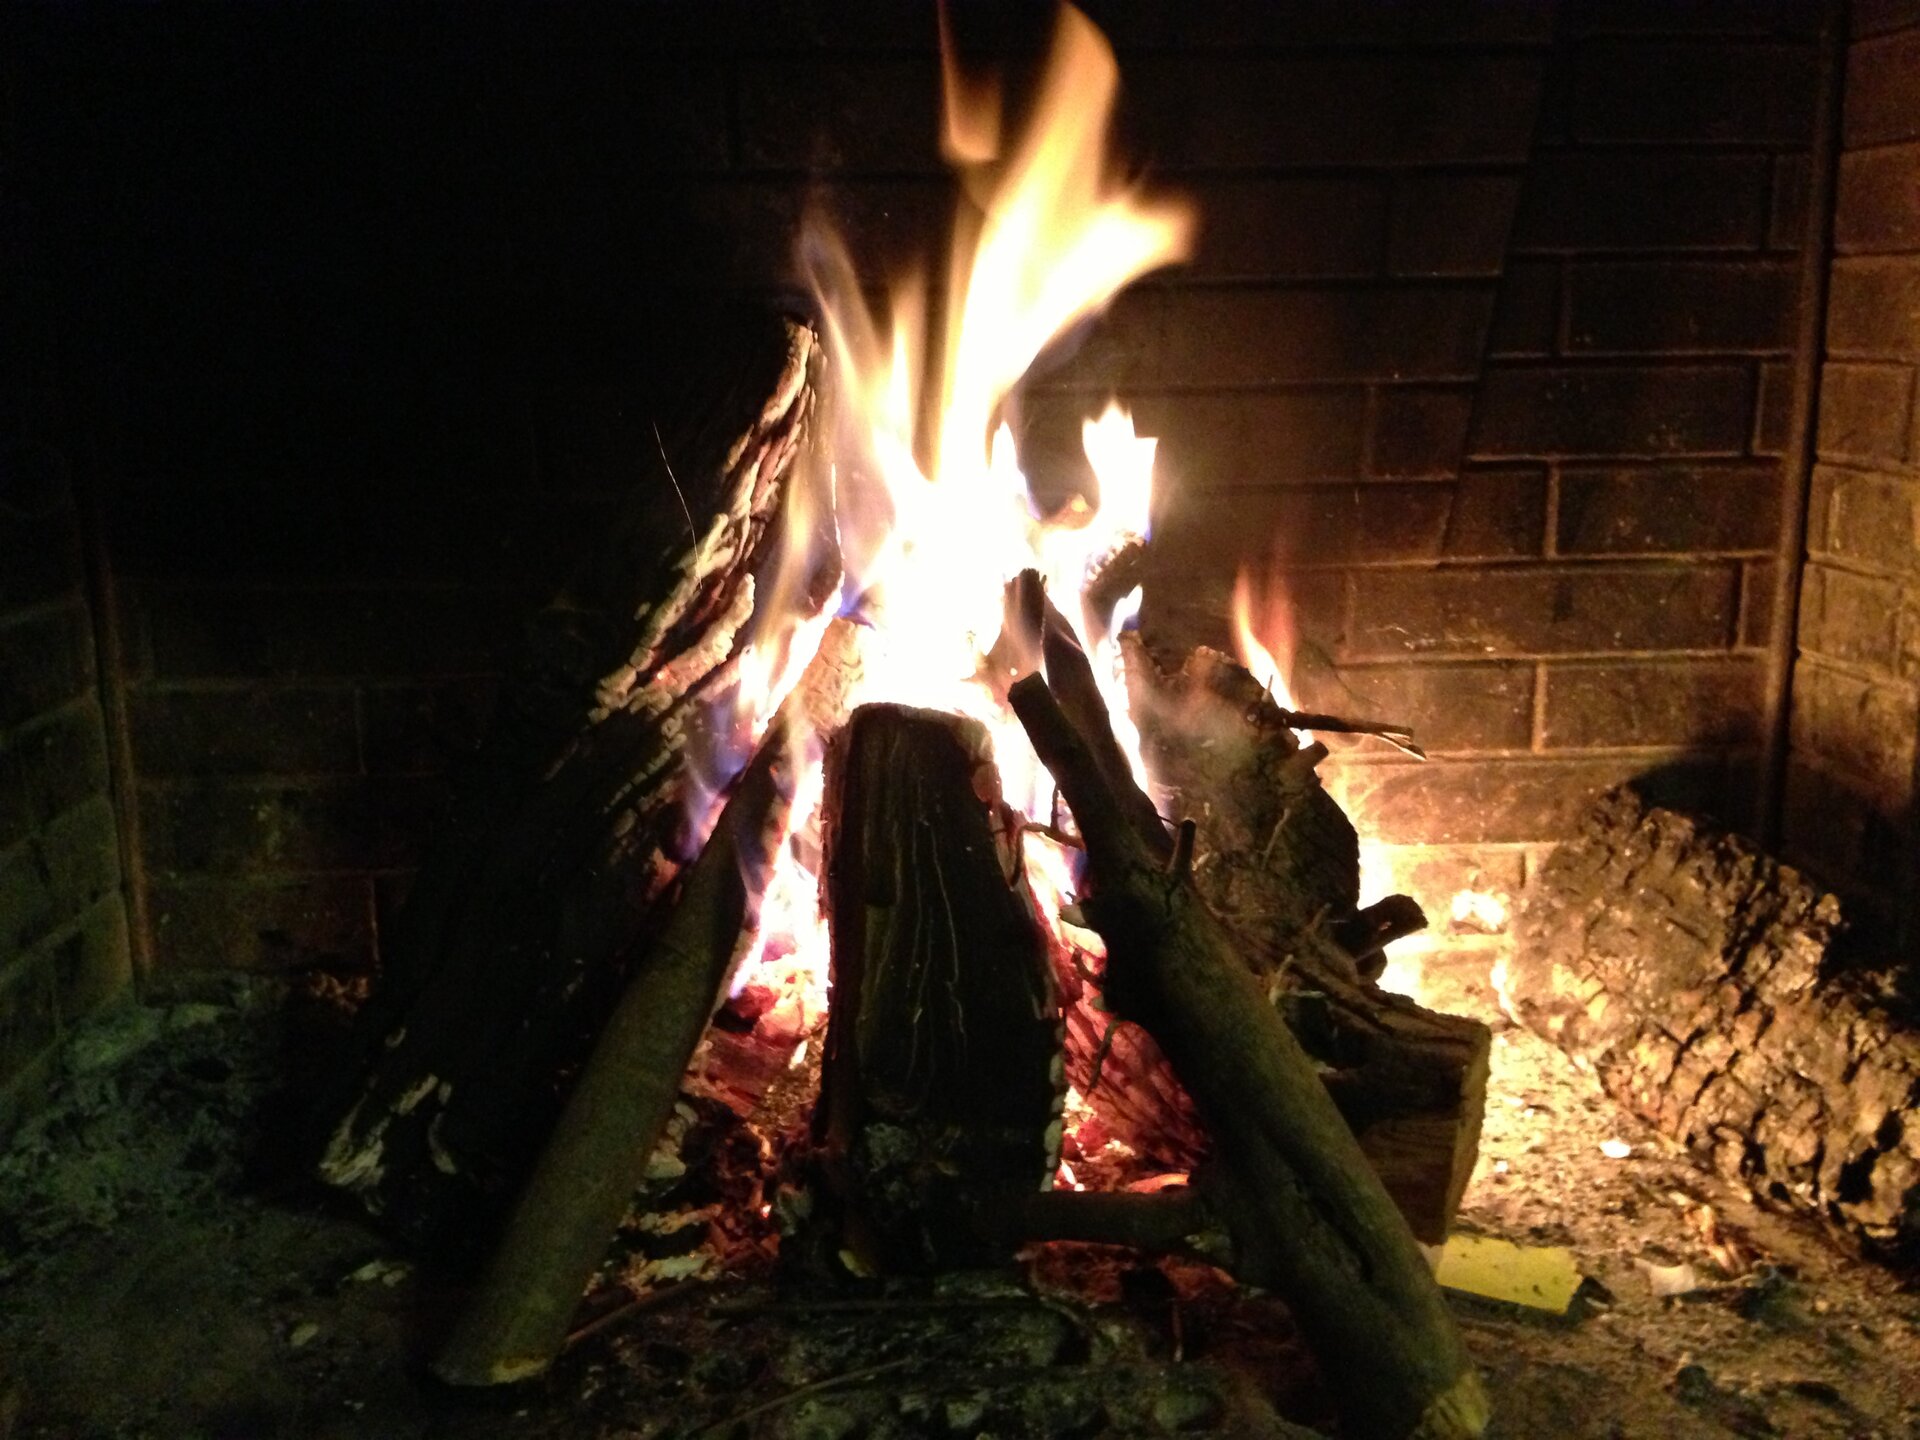 Fotografia pokazuje kominek z palącymi się jasnym płomieniem polanami drewna.